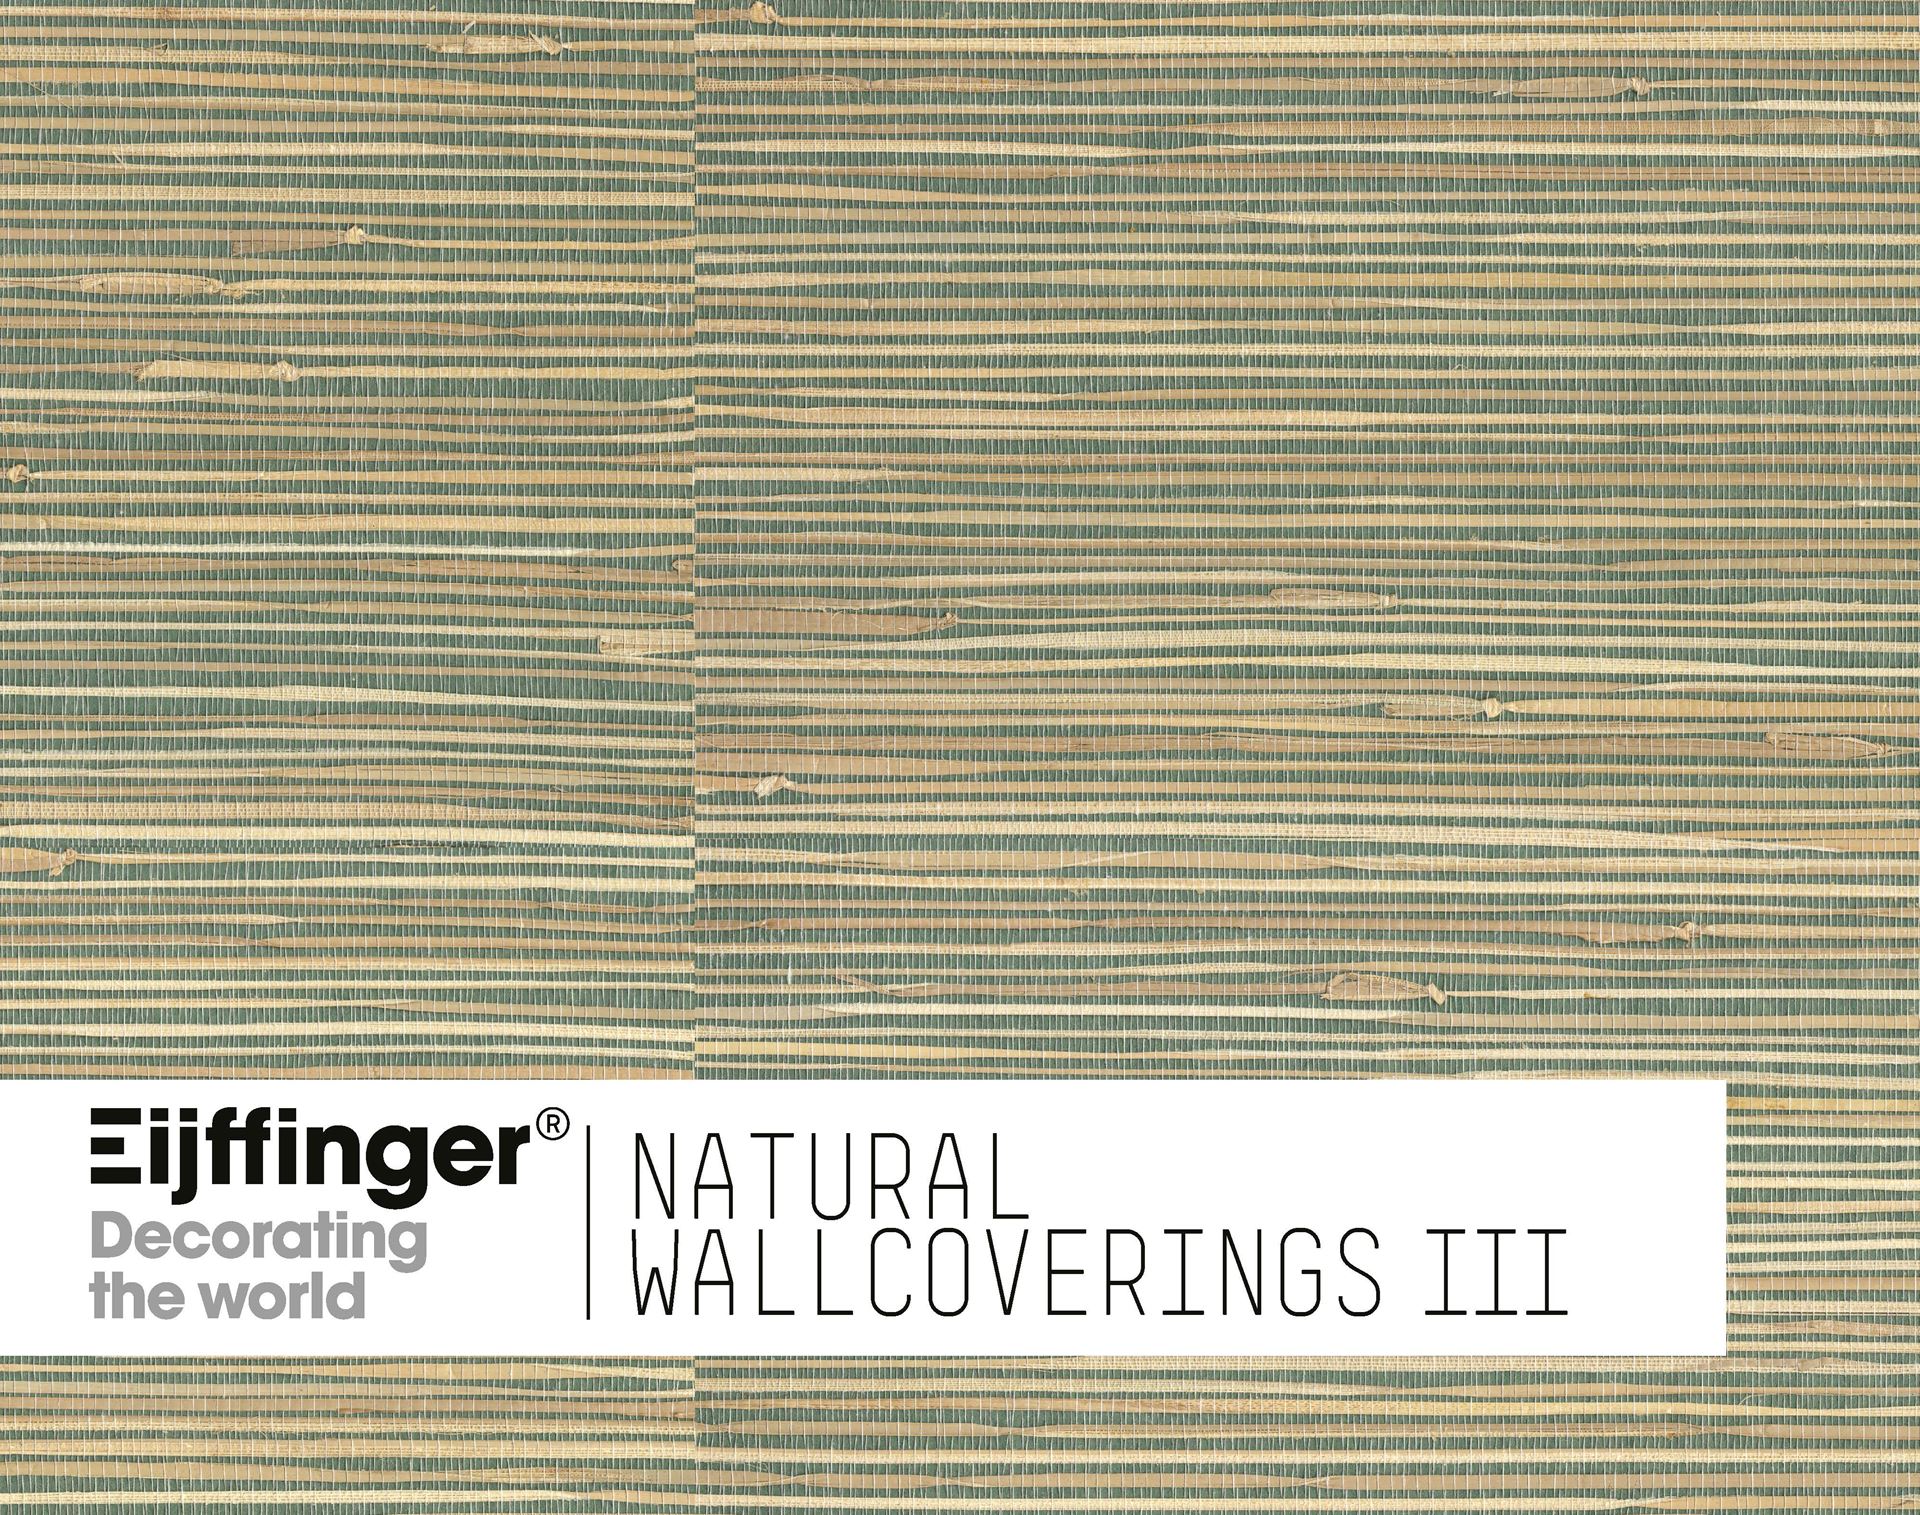 Eijffinger tapete - Natural Wallcoverings III - Eijffinger